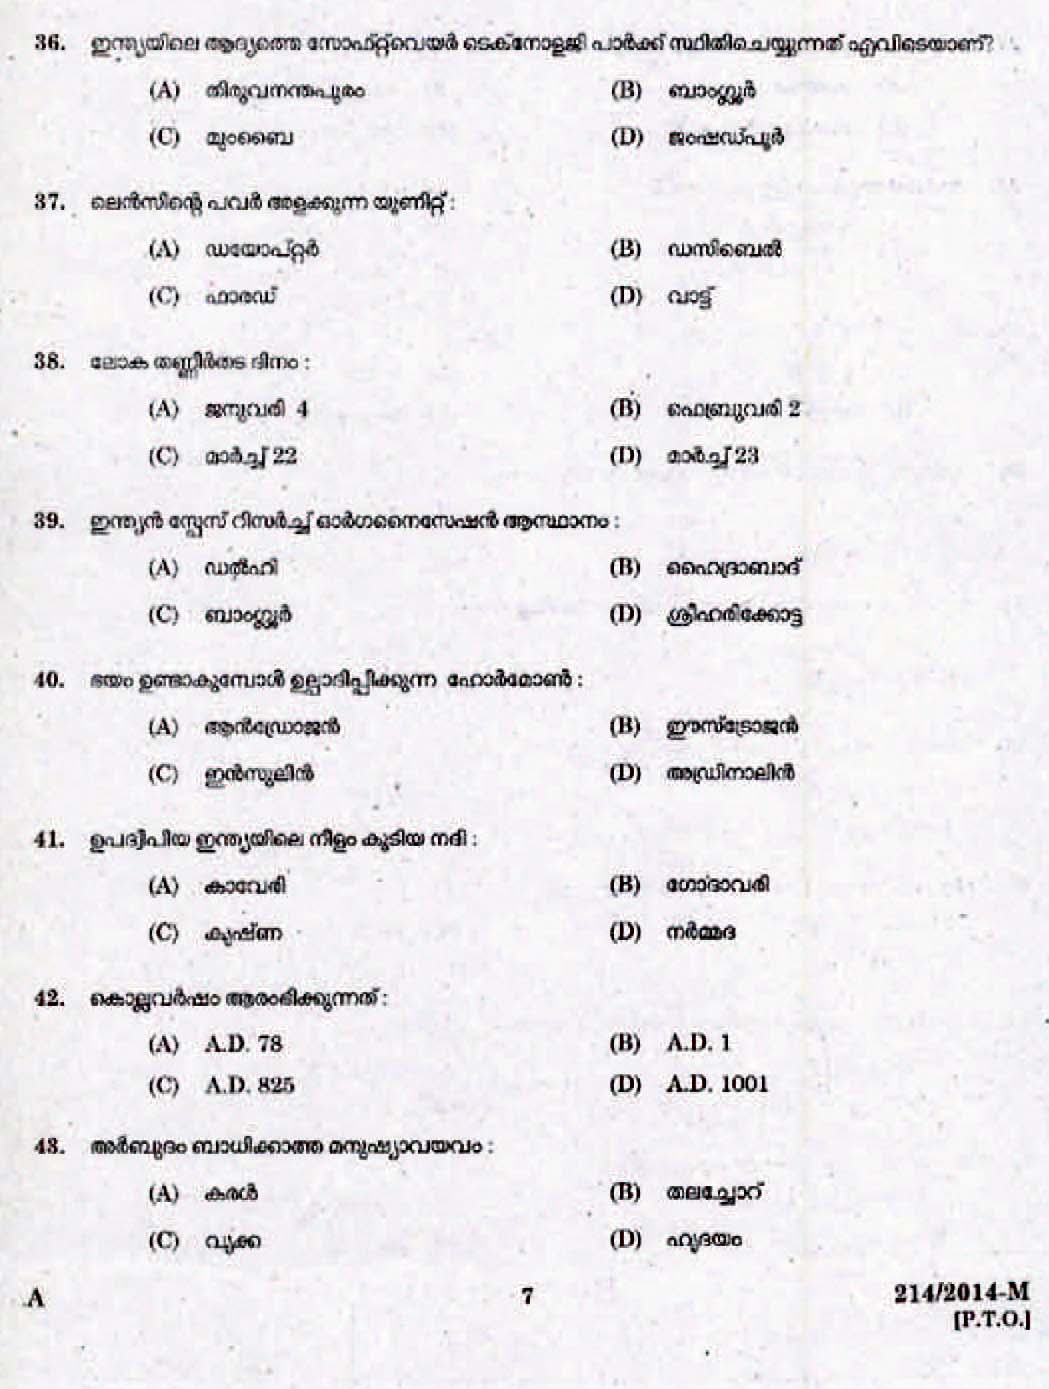 Kerala Last Grade Servants Exam 2014 Question Paper Code 2142014 M 5